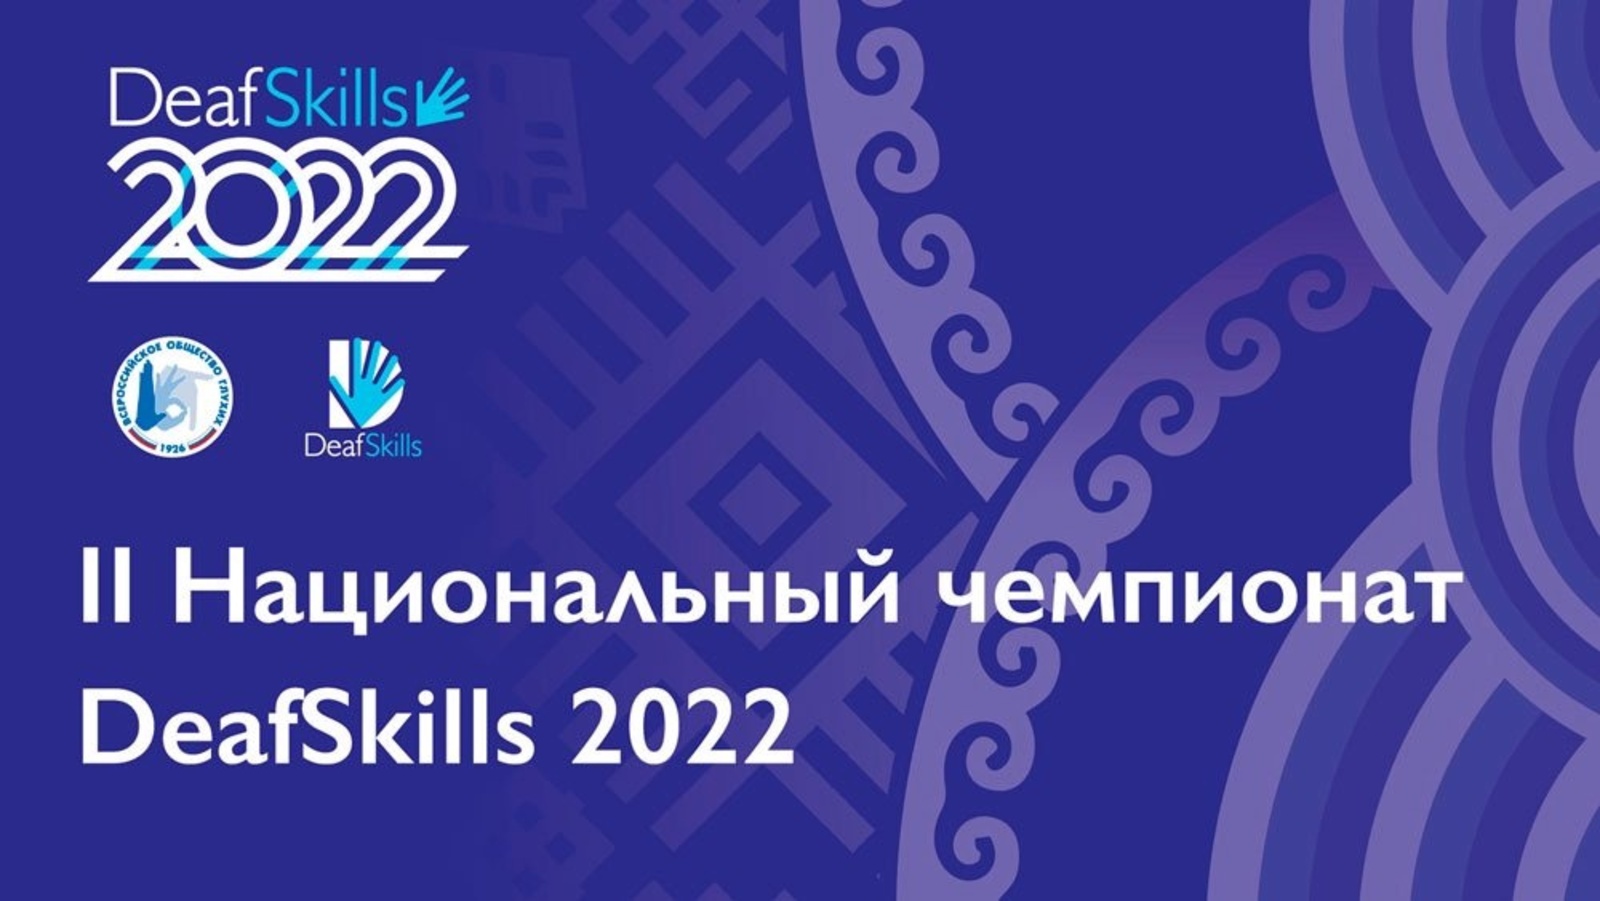 Ждем на торжественном открытии II Национального Чемпионата Deafskills 2022